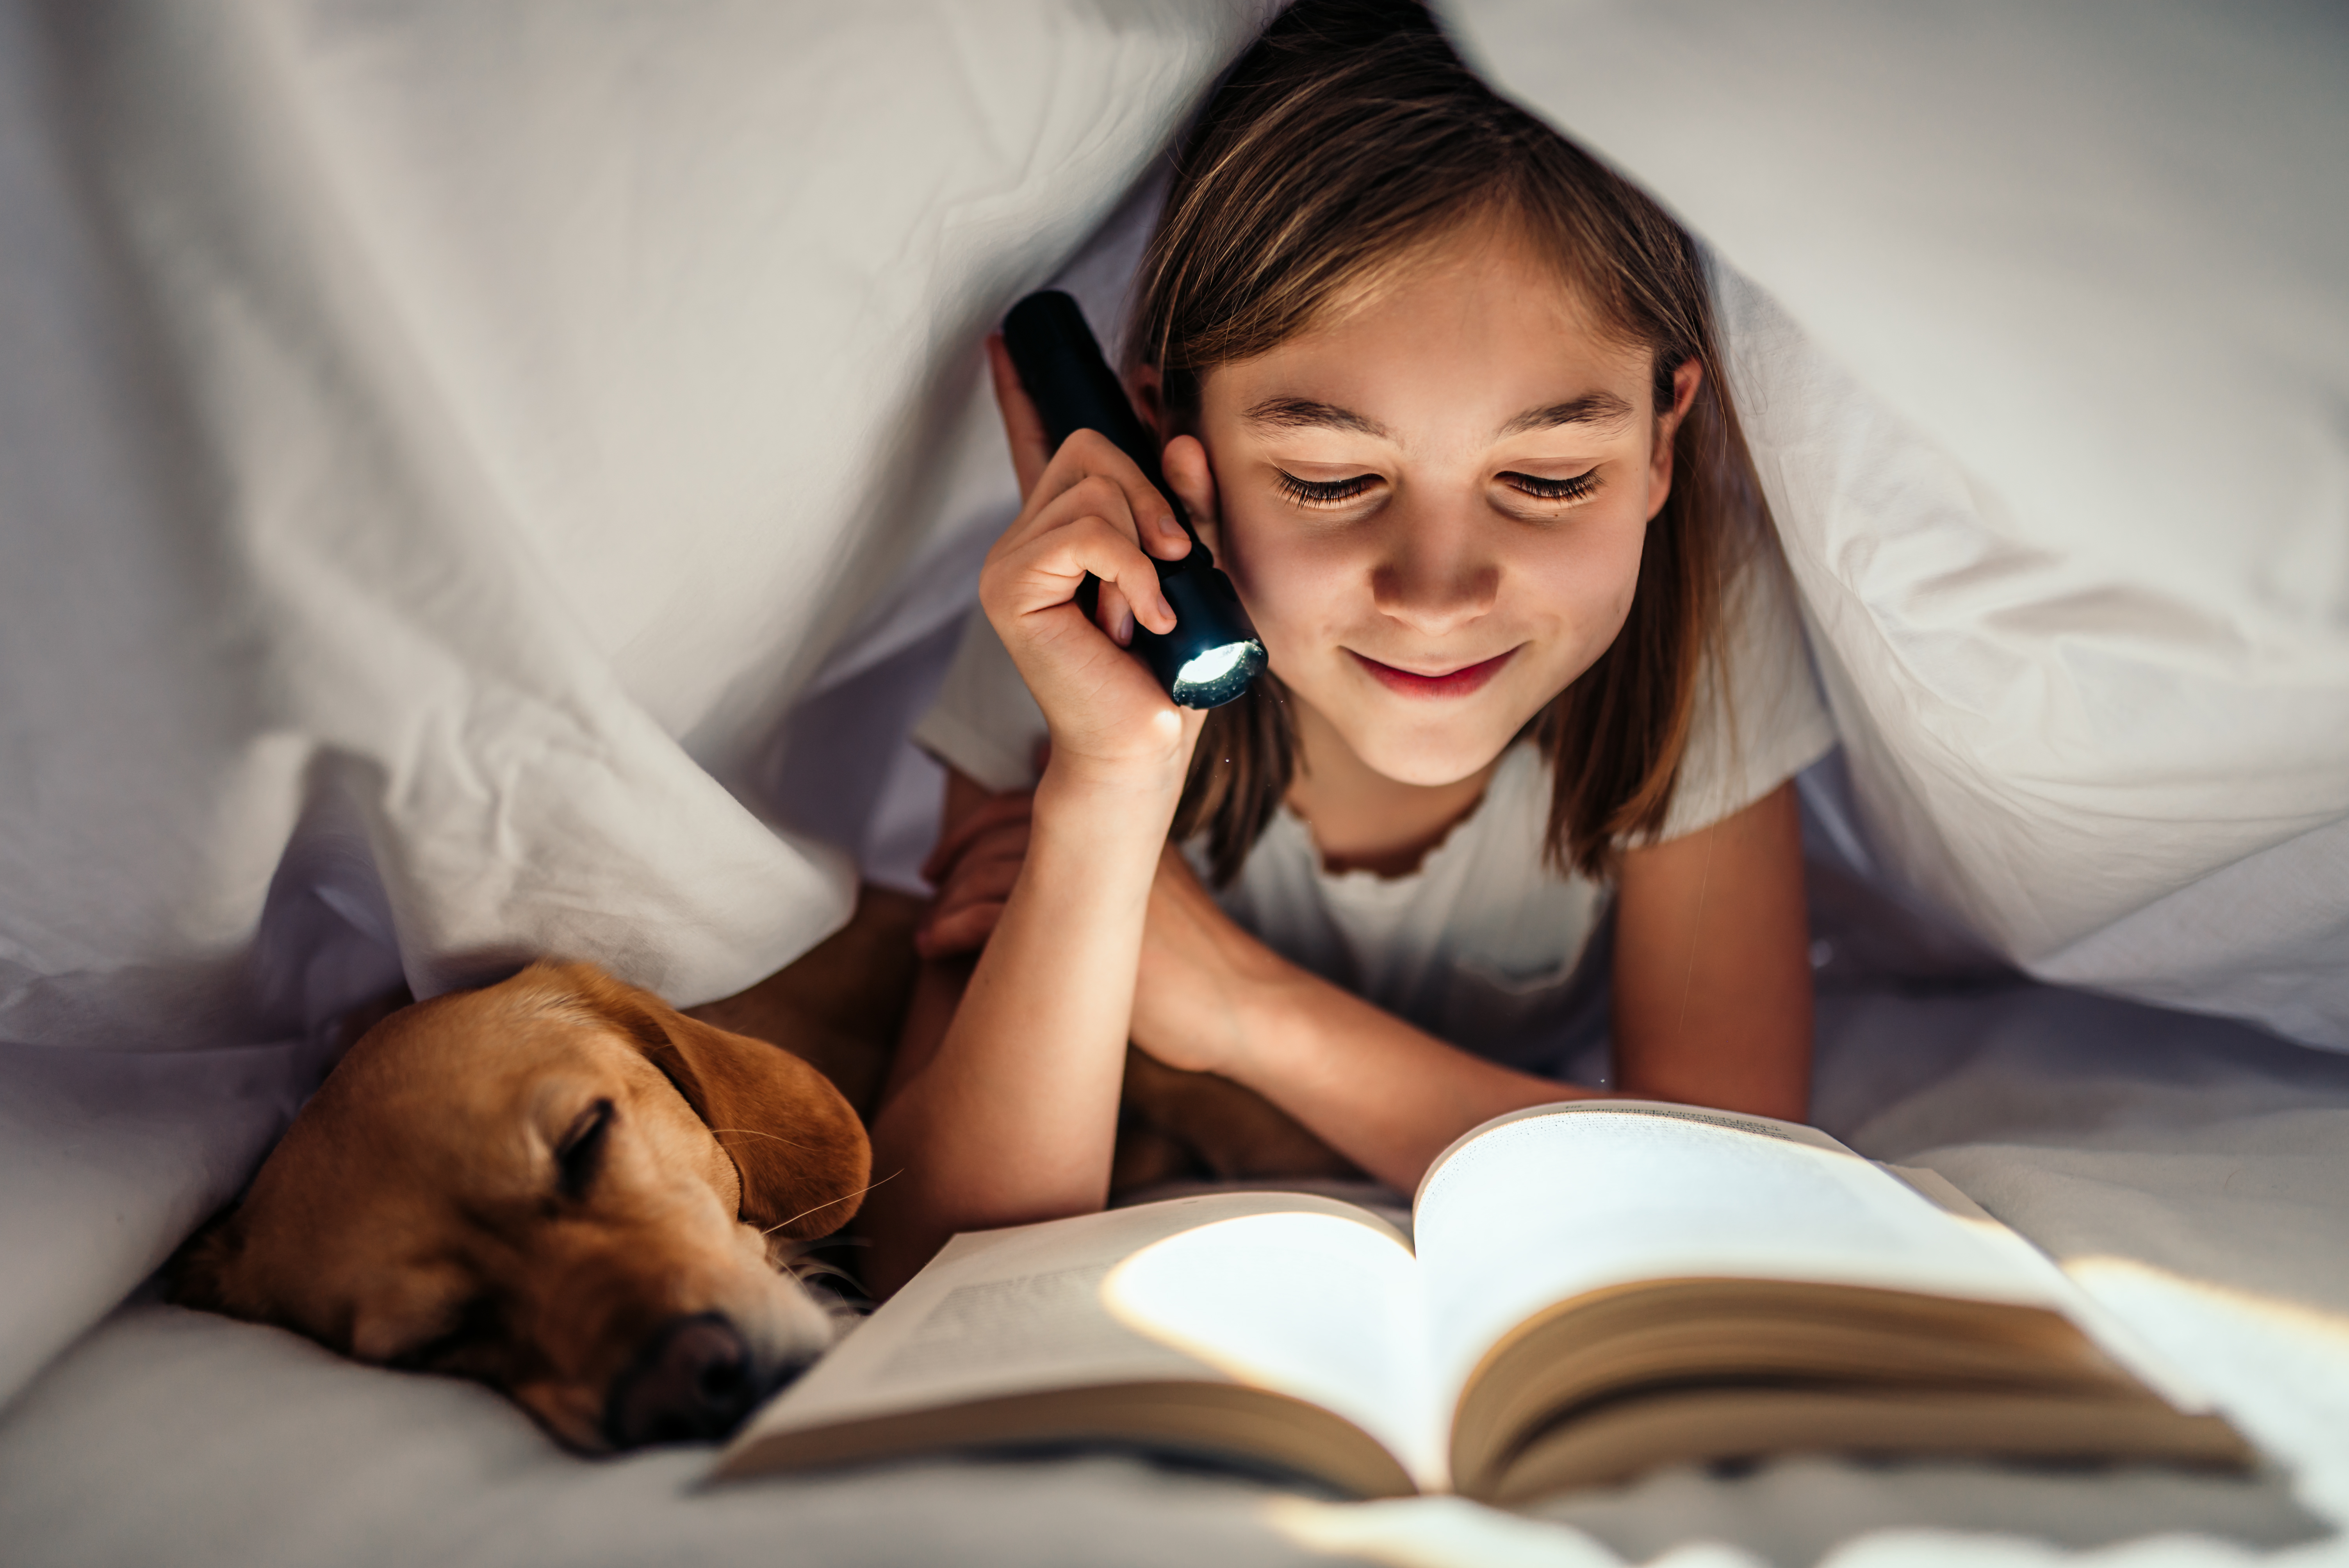 Imaxe nena lendo un libro xunto ao seu cachorro